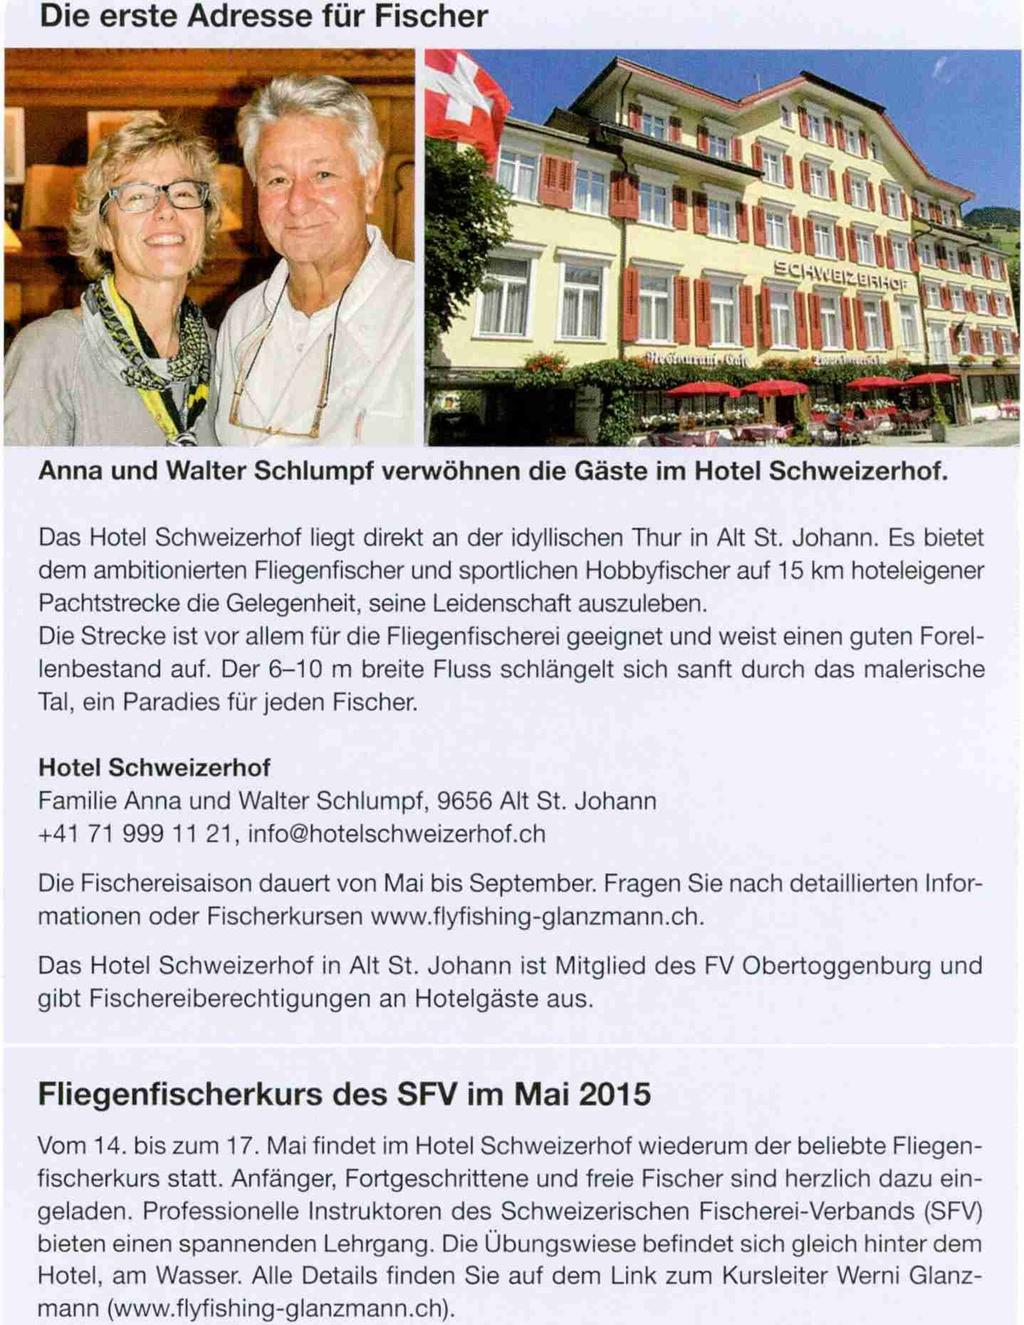 Das Hotel Schweizerhof liegt direkt an der idyllischen Thur in Alt St. Johann.